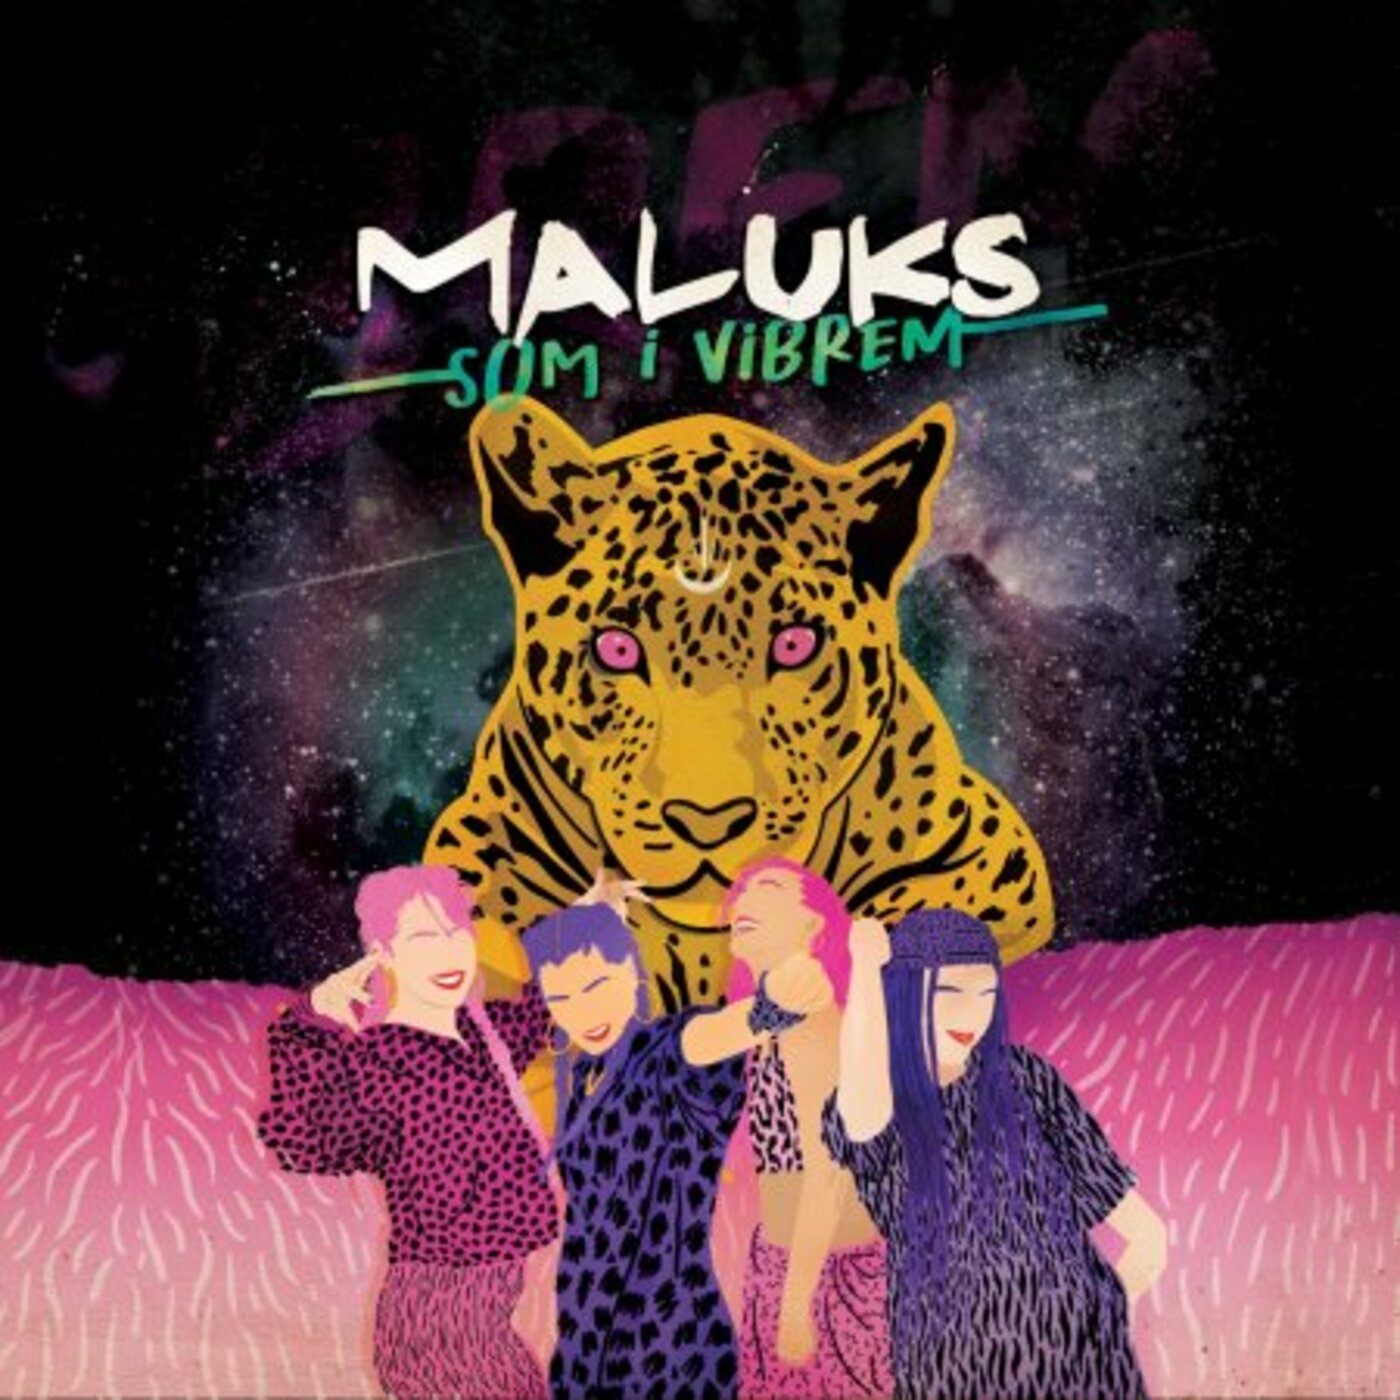 Maluks - Som i vibrem | musica en valencià